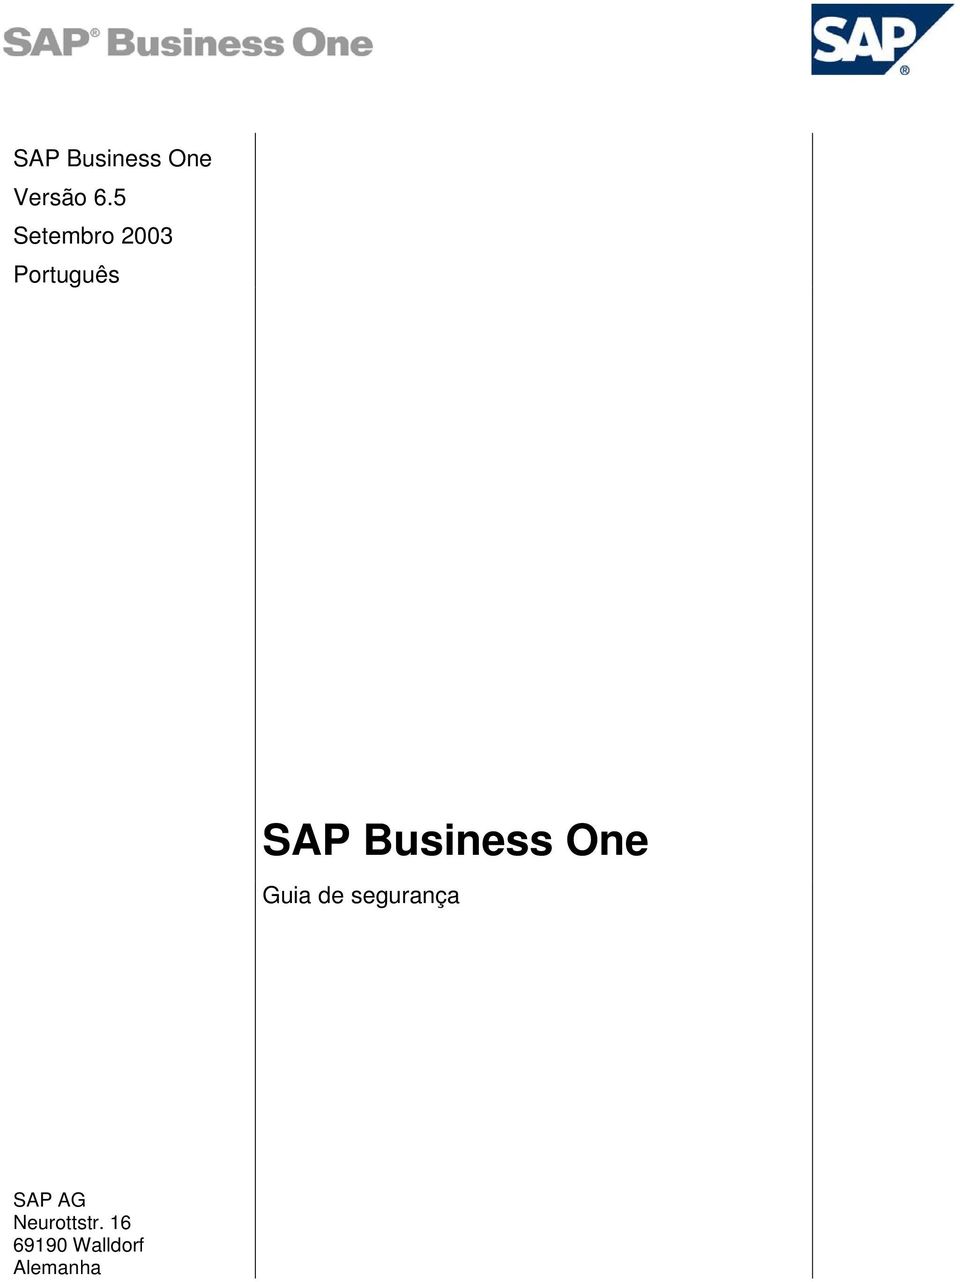 SAP Business One Guia de